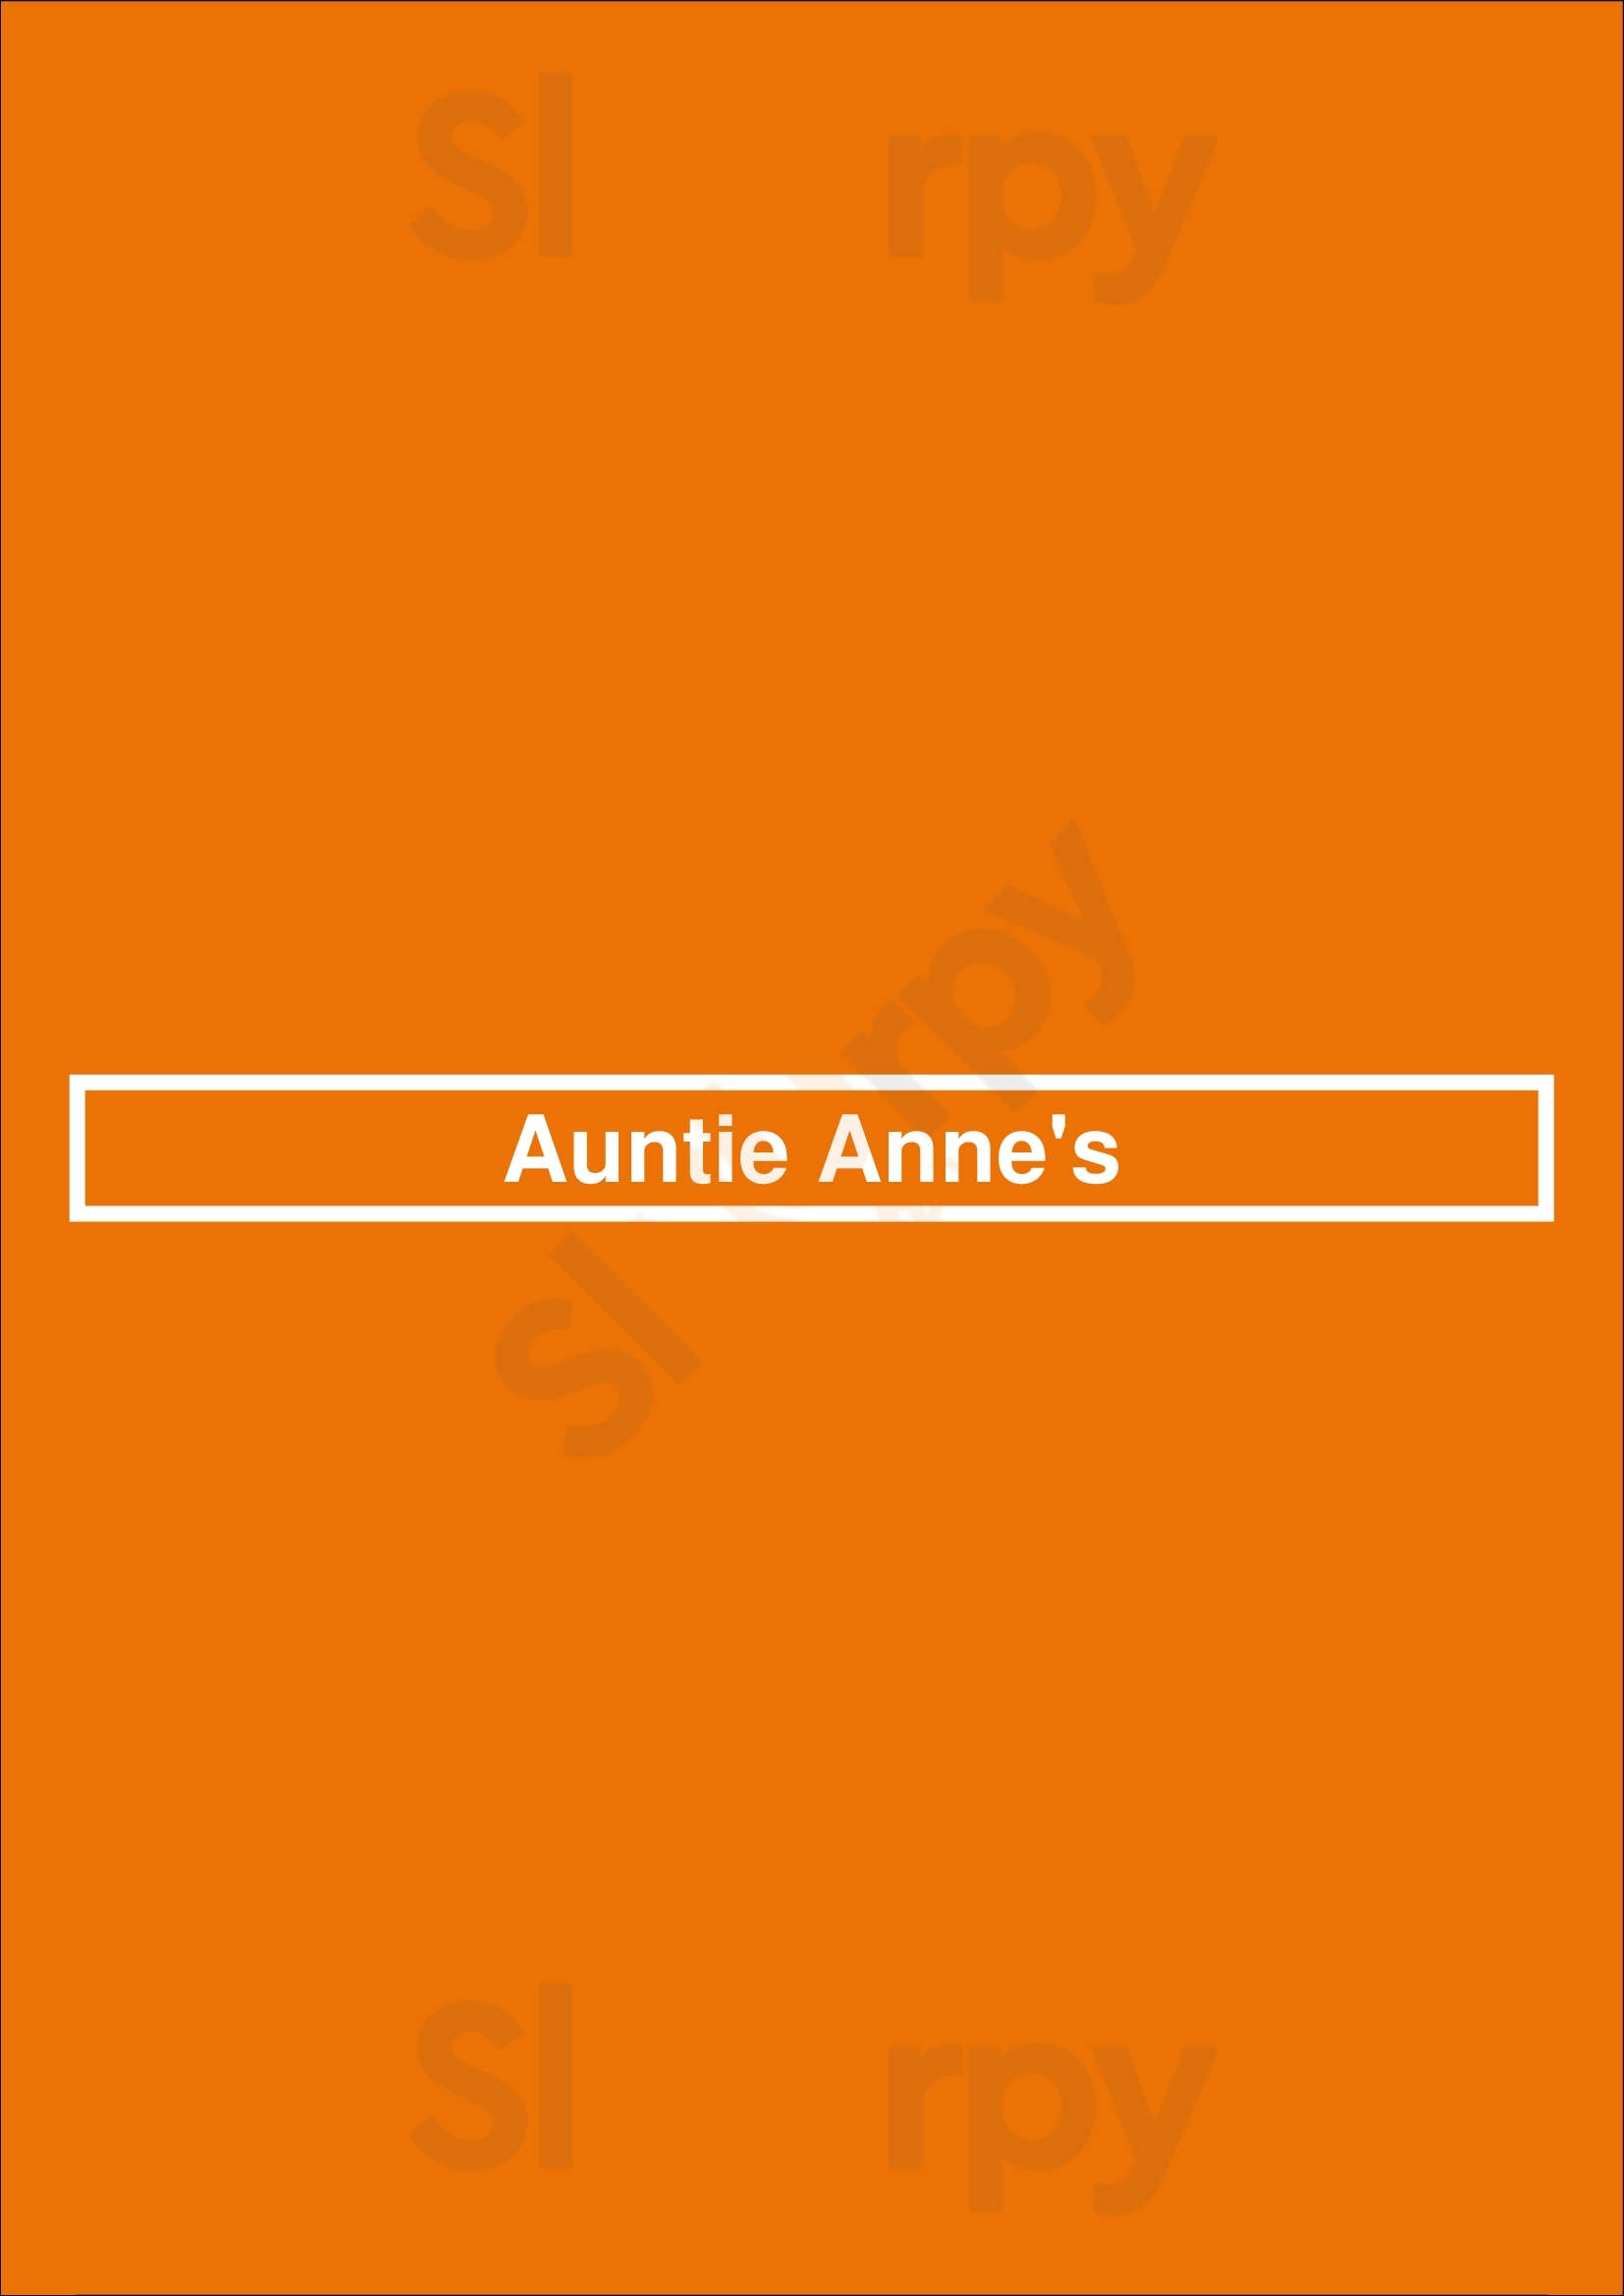 Auntie Anne's Portage Menu - 1